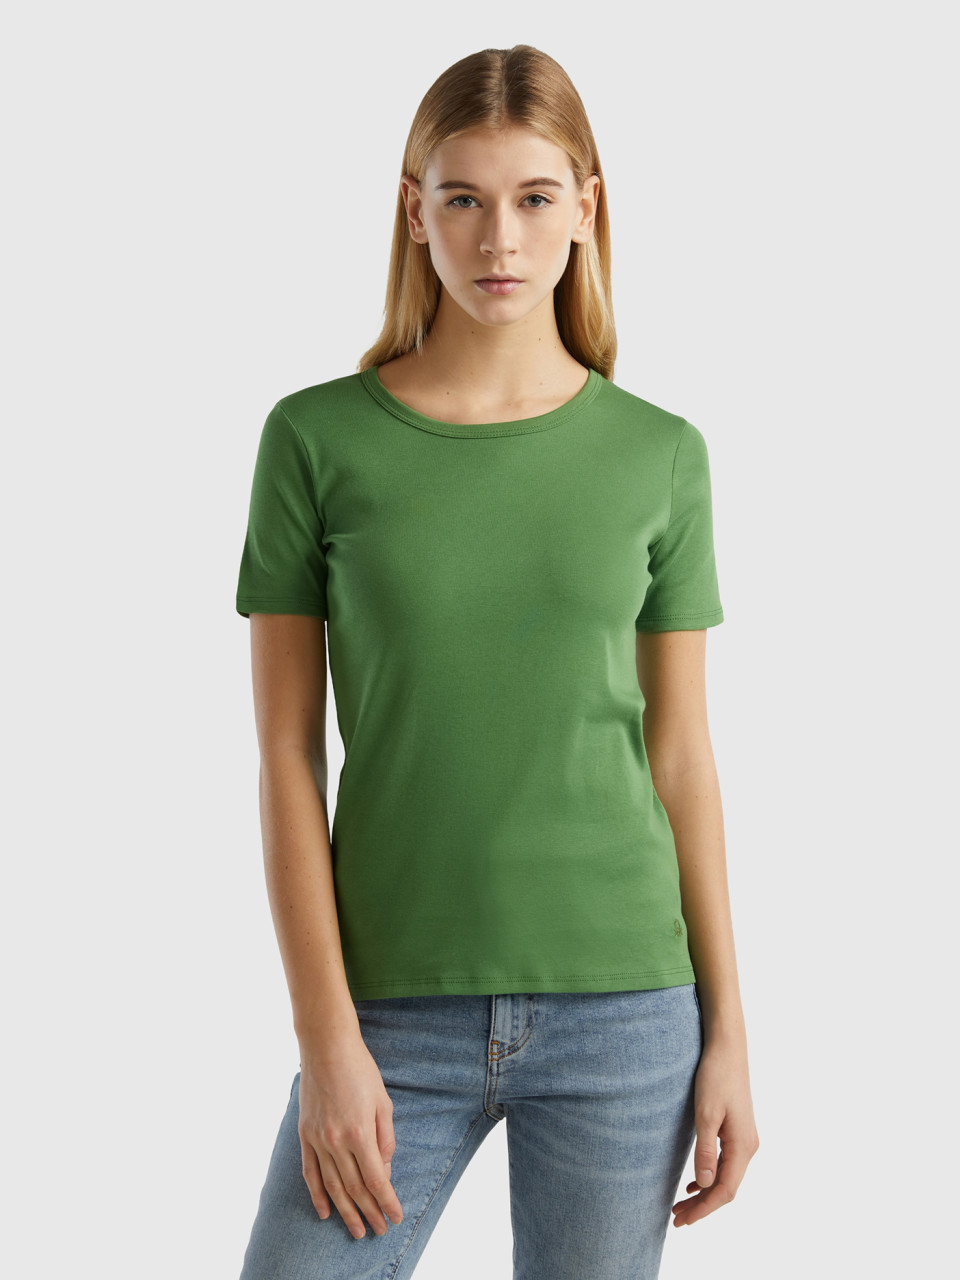 Benetton, T-shirt In Cotone A Fibra Lunga, Verde Militare, Donna